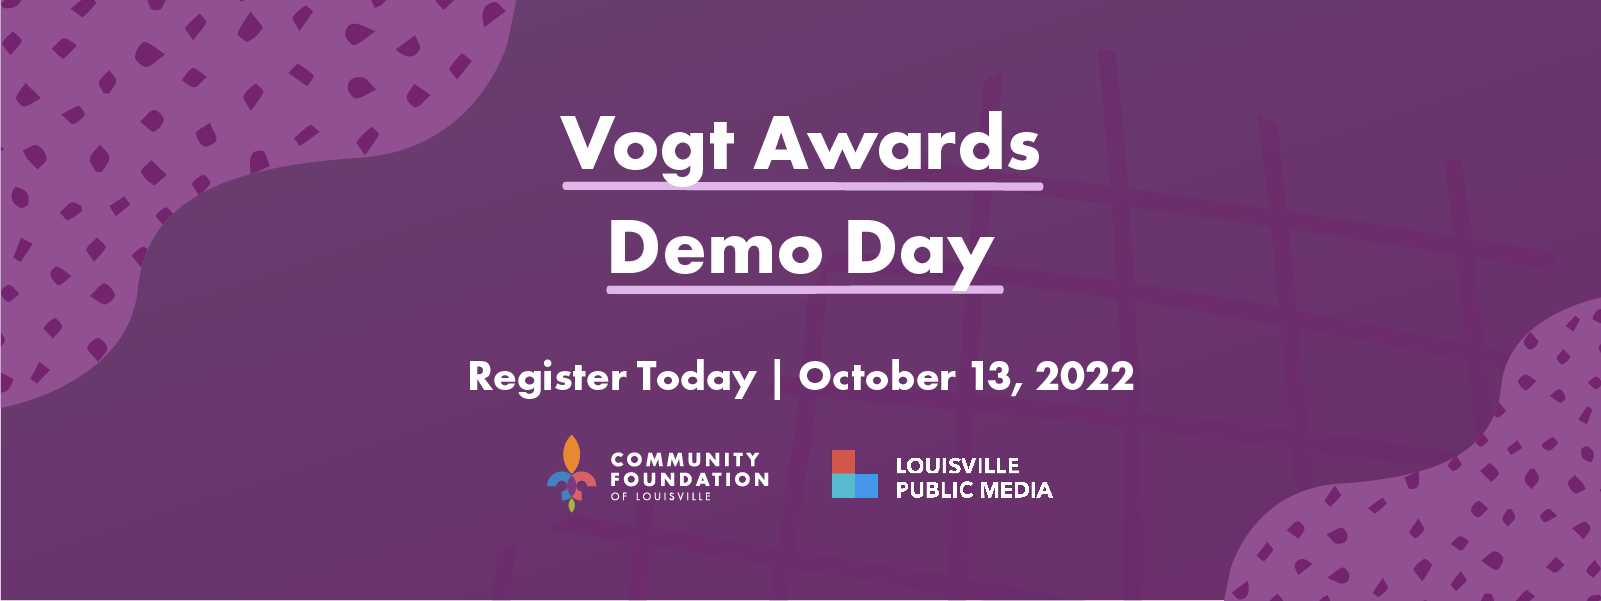 Vogt Awards 2022 Demo Day Web Slider